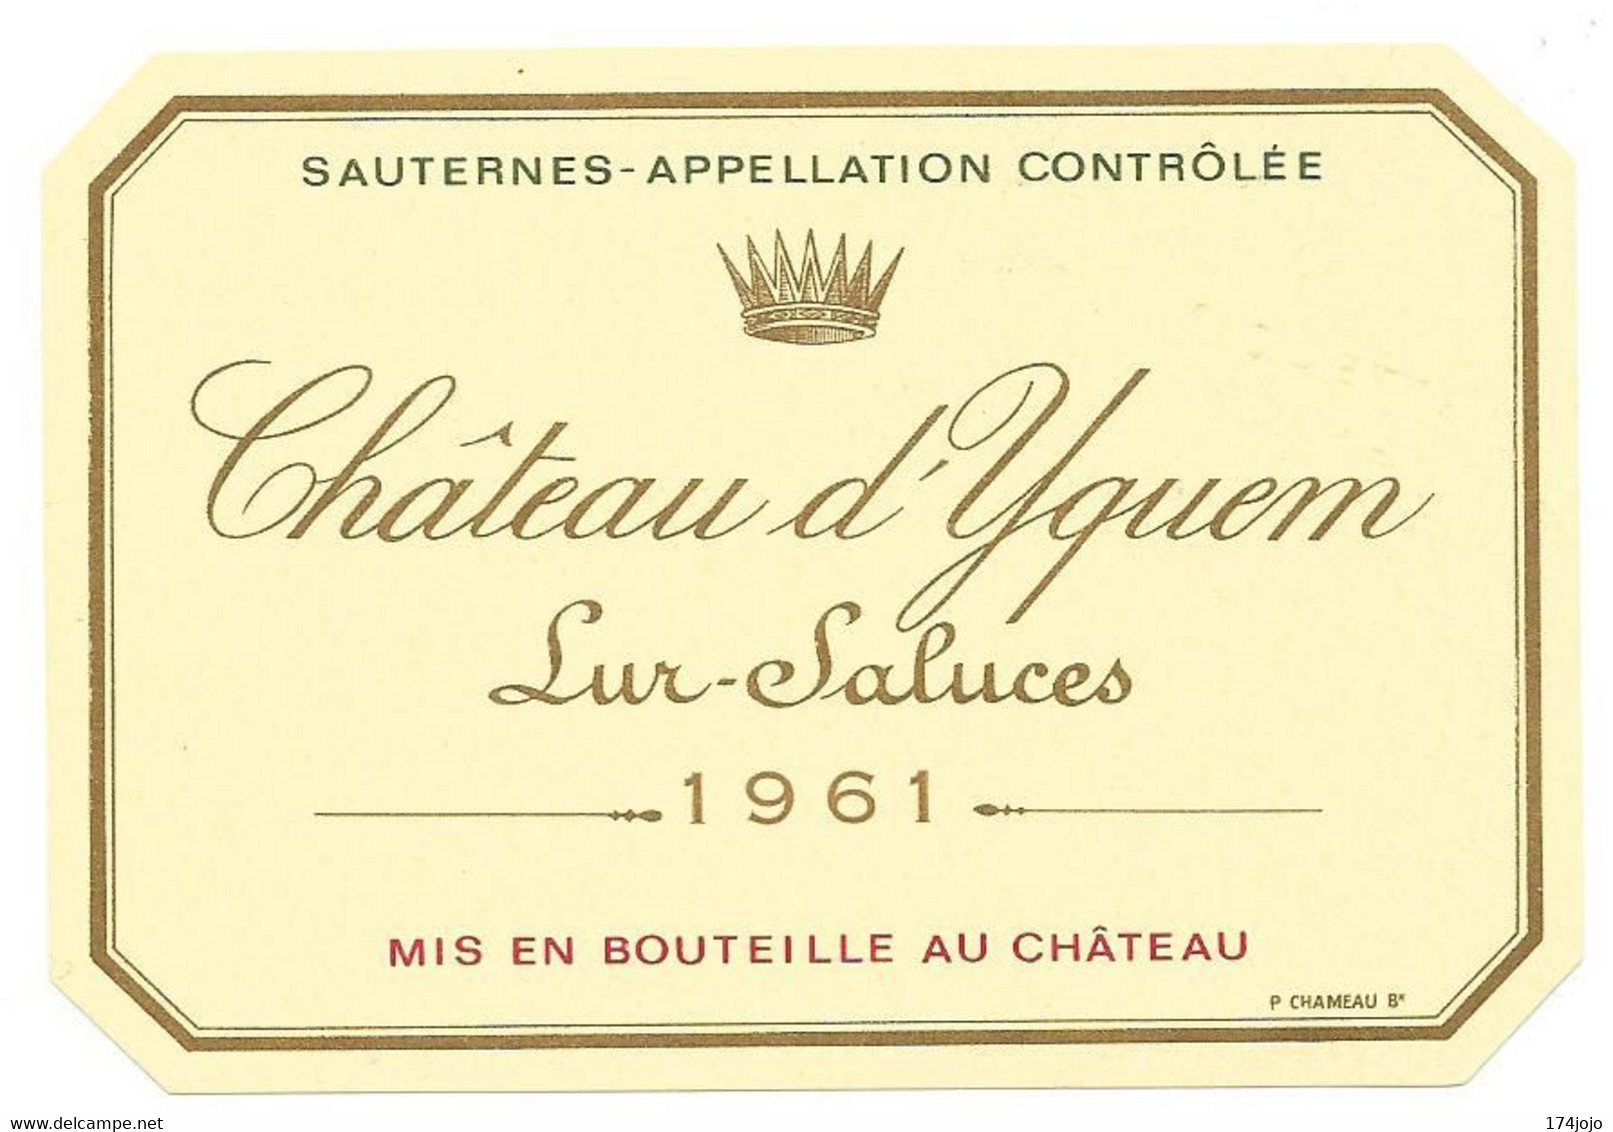 ETIQUETTE DE VIN CHATEAU D'YQUEM LUR-SALUCES 1961 NEUVE SPECIMEN APPELLATION SAUTERNES  WINE LABEL FRENCH - Bordeaux